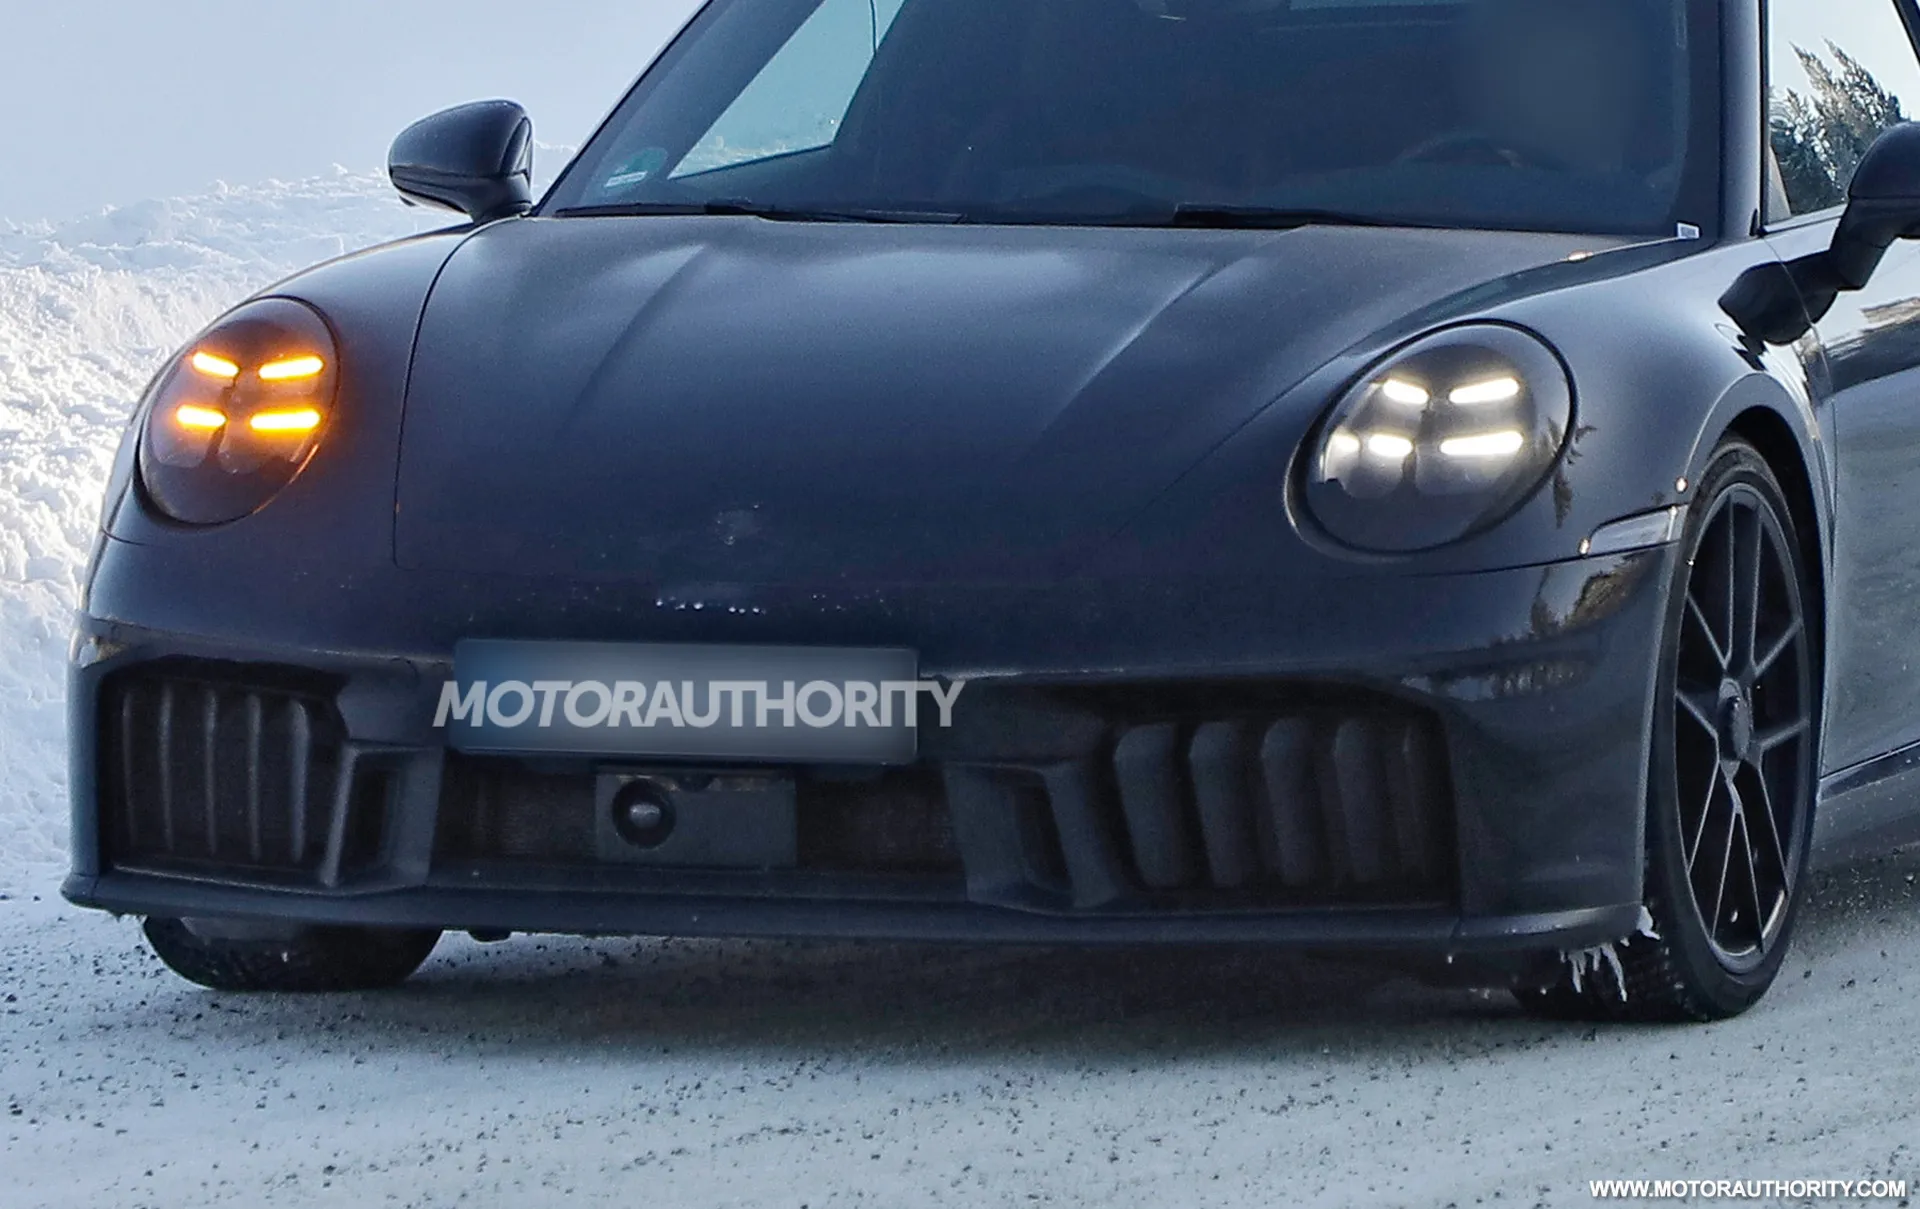 2025 Porsche 911 Targa facelift spy shots - Photo credit: Baldauf